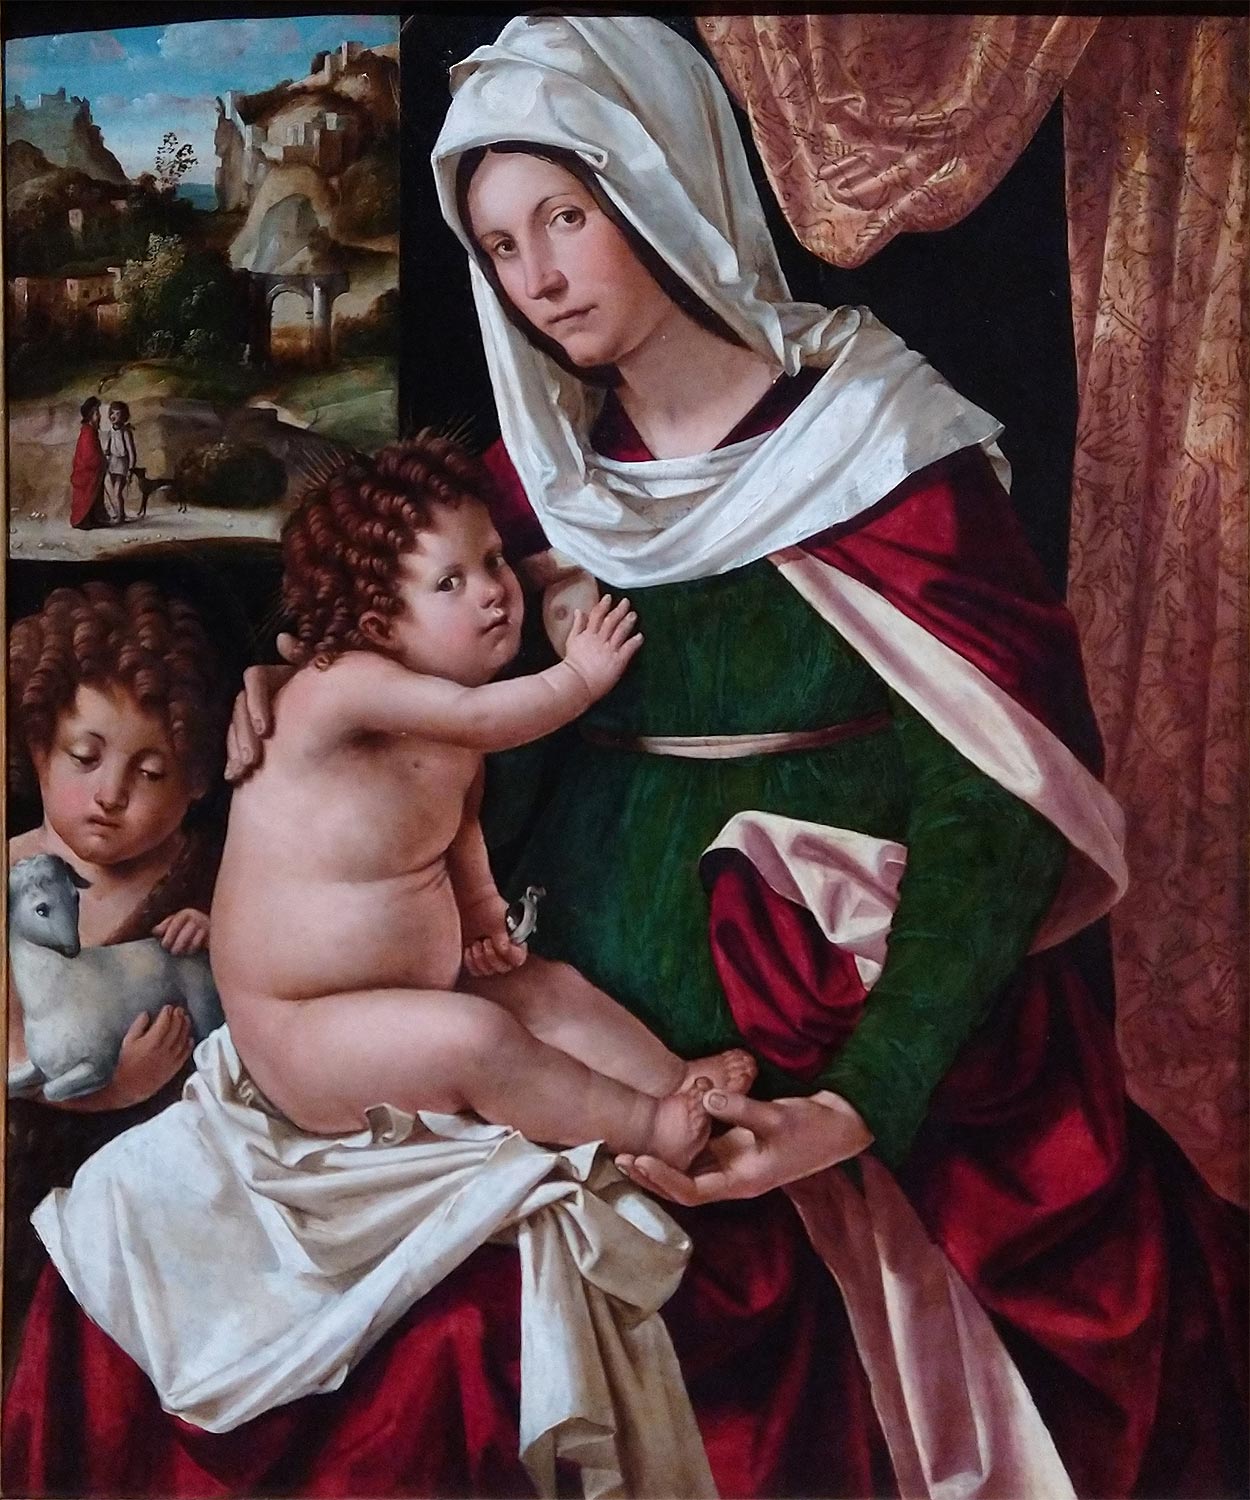 Altobello Melone, Madonna and Child with Little Saint John (c. 1510; oil on panel, 53.8 x 66.4 cm; Bergamo, Accademia Carrara)